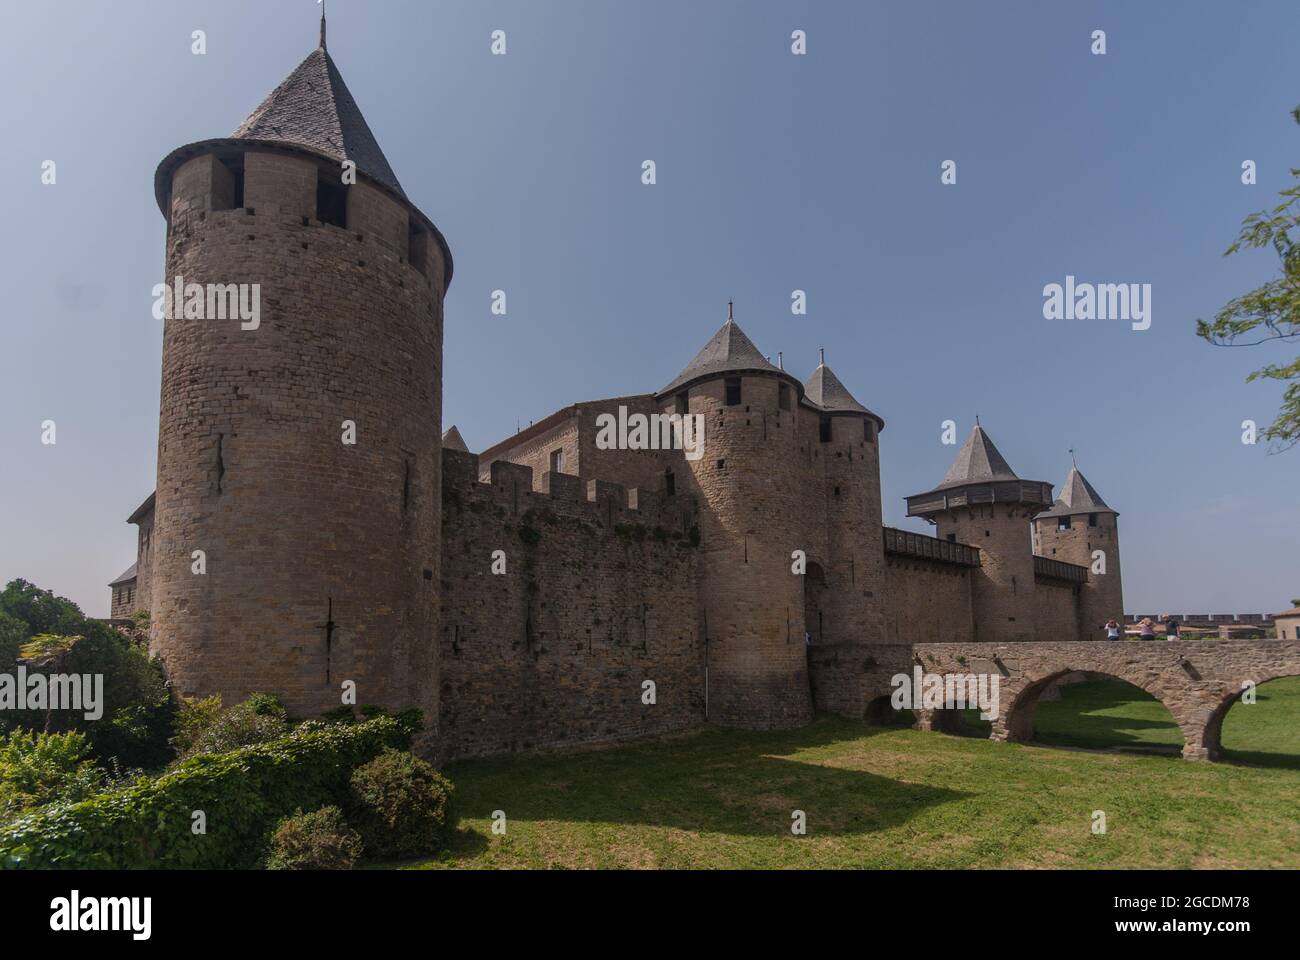 Le château du comte était le dernier refuge à l'intérieur de la cité médiévale fortifiée de Carcassonne Banque D'Images